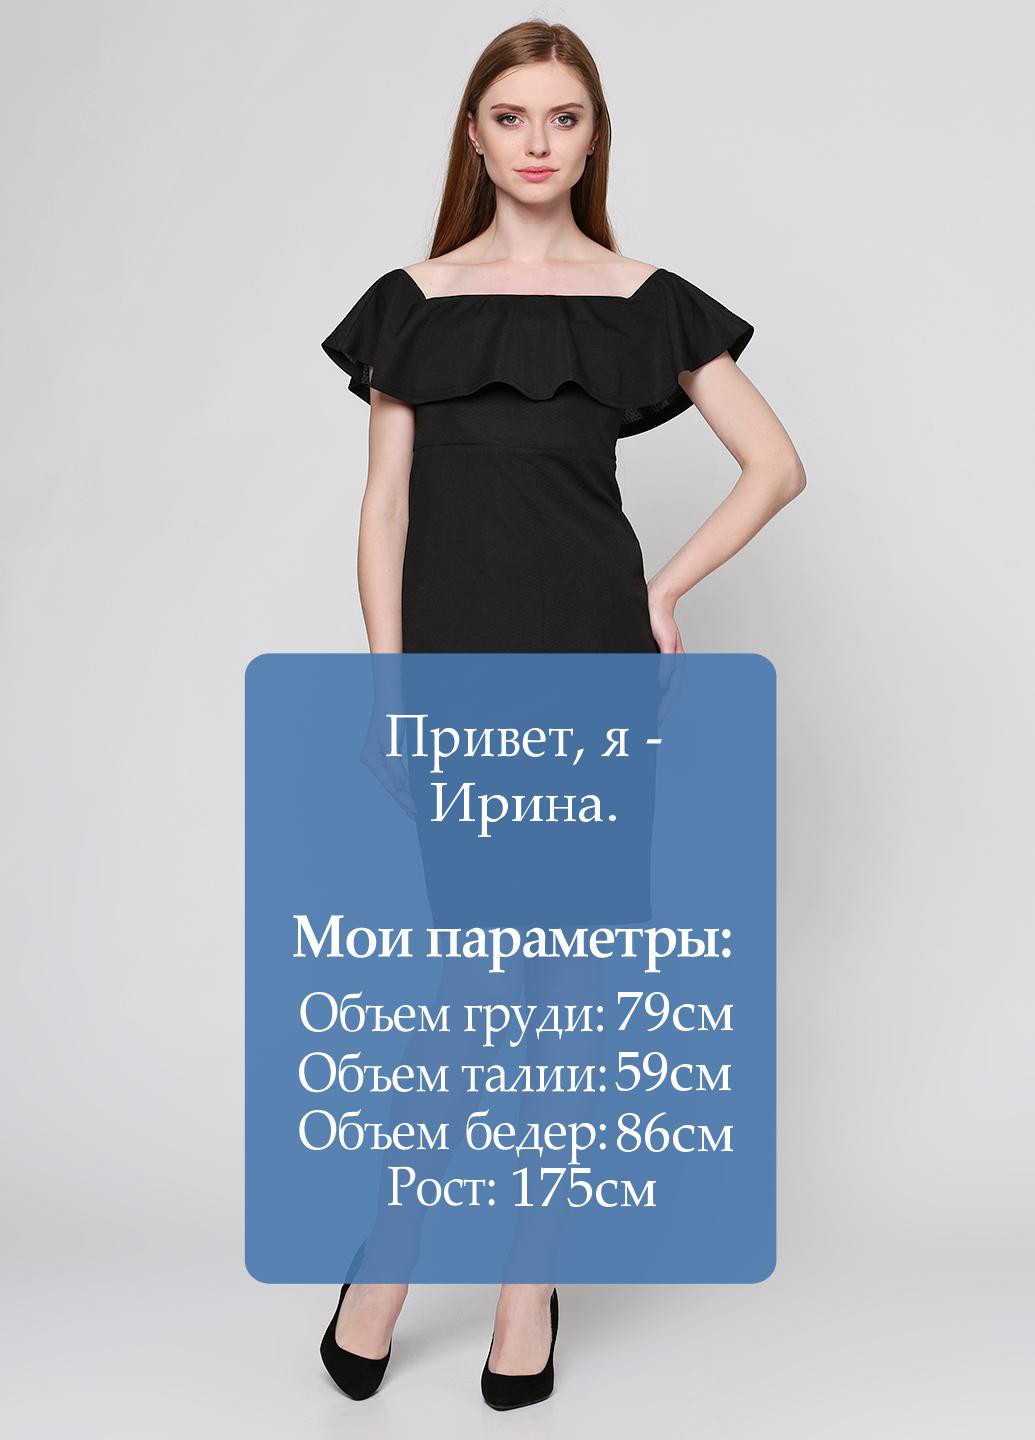 Черное коктейльное платье Simonaom